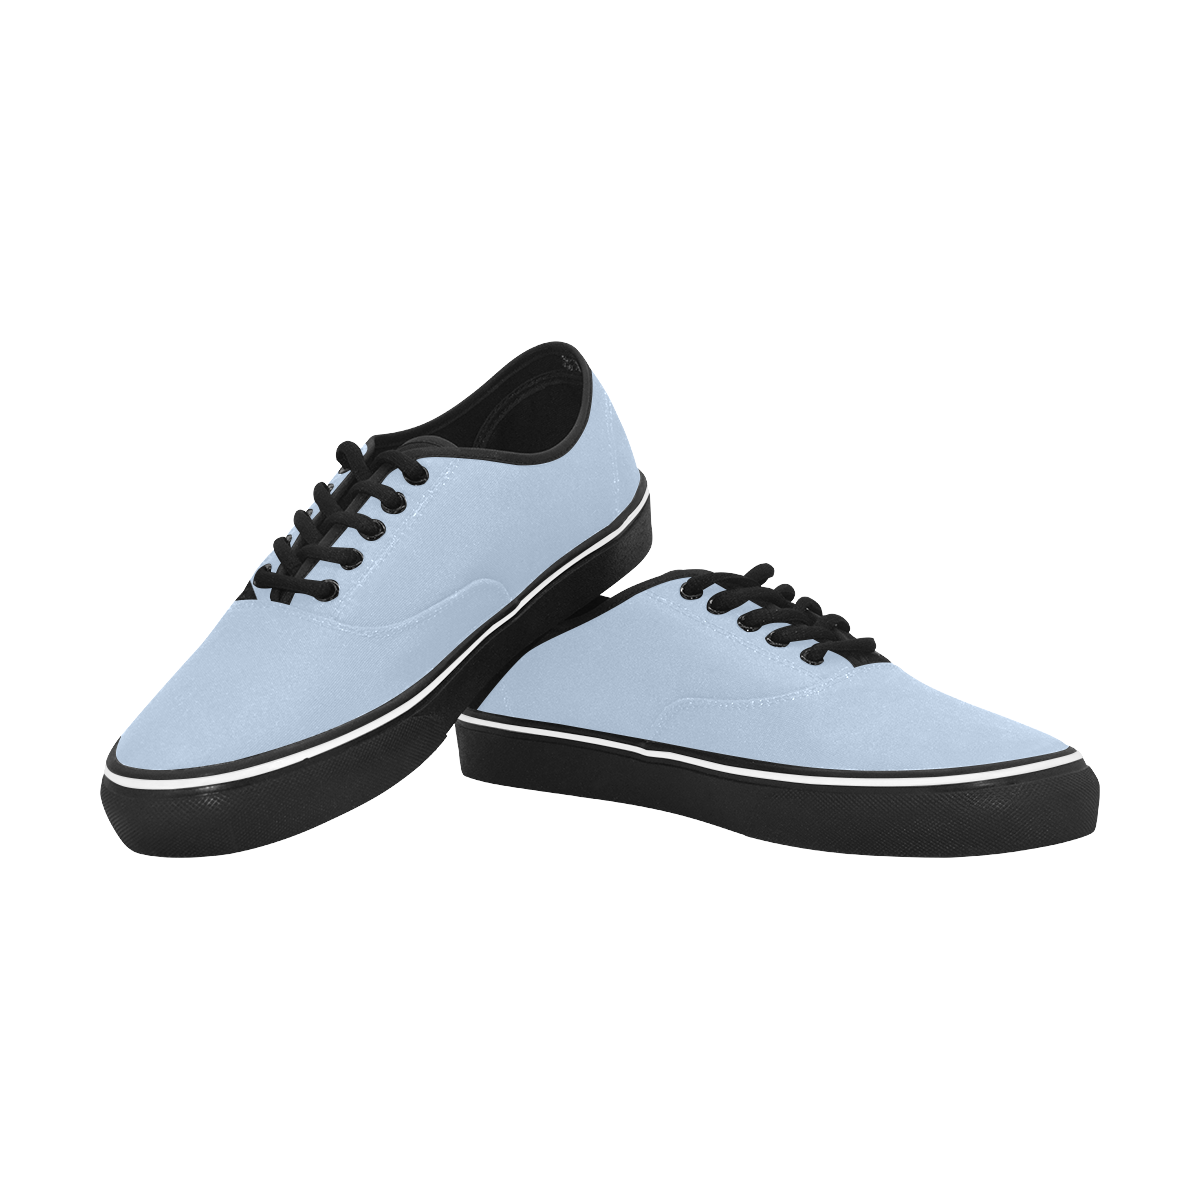 color light steel blue Classic Men's Canvas Low Top Shoes/Large (Model E001-4)